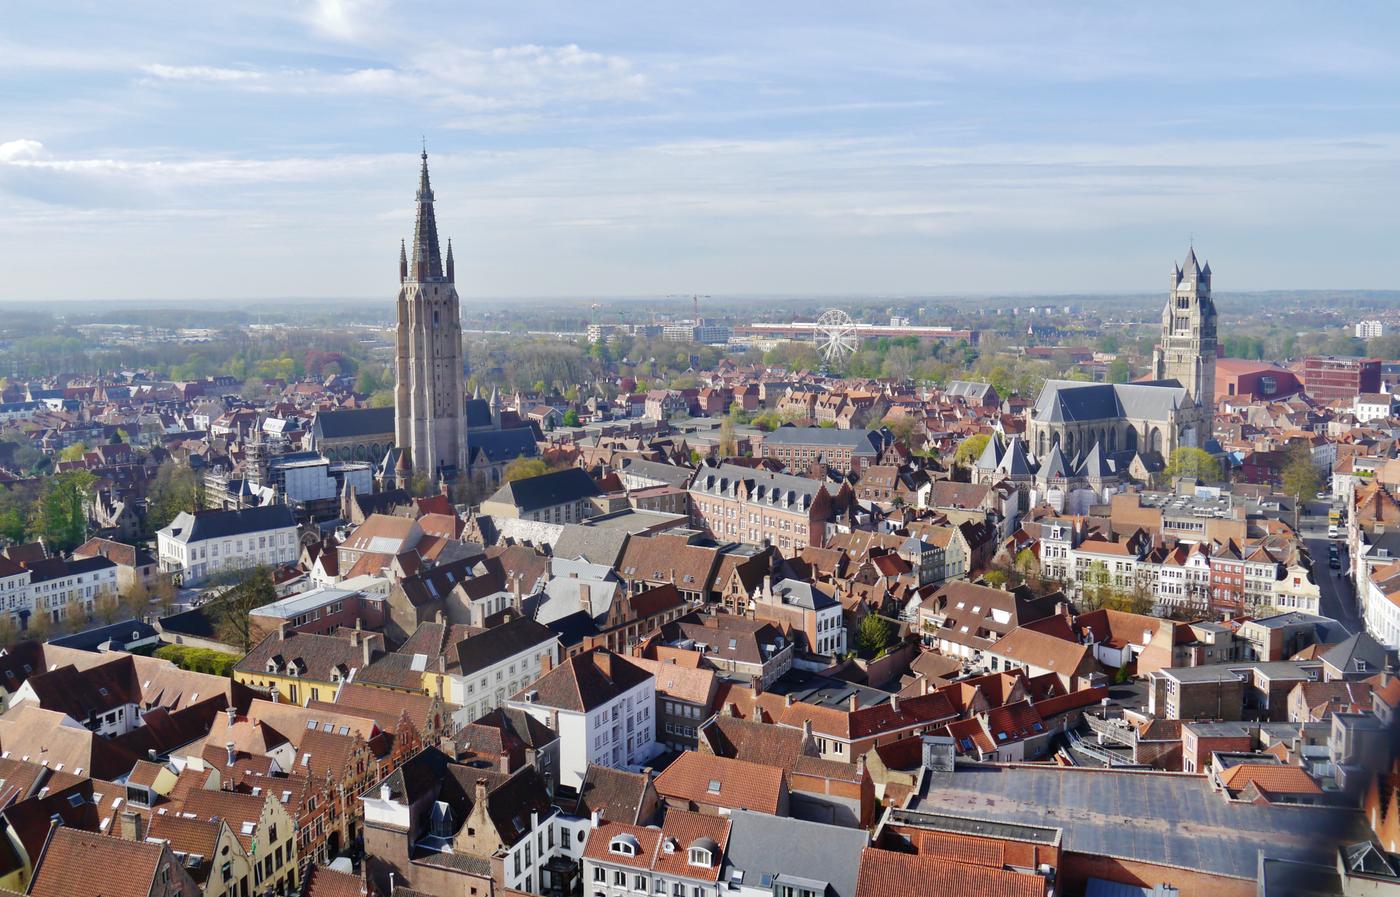 Bruges: Fairytale alleys await you